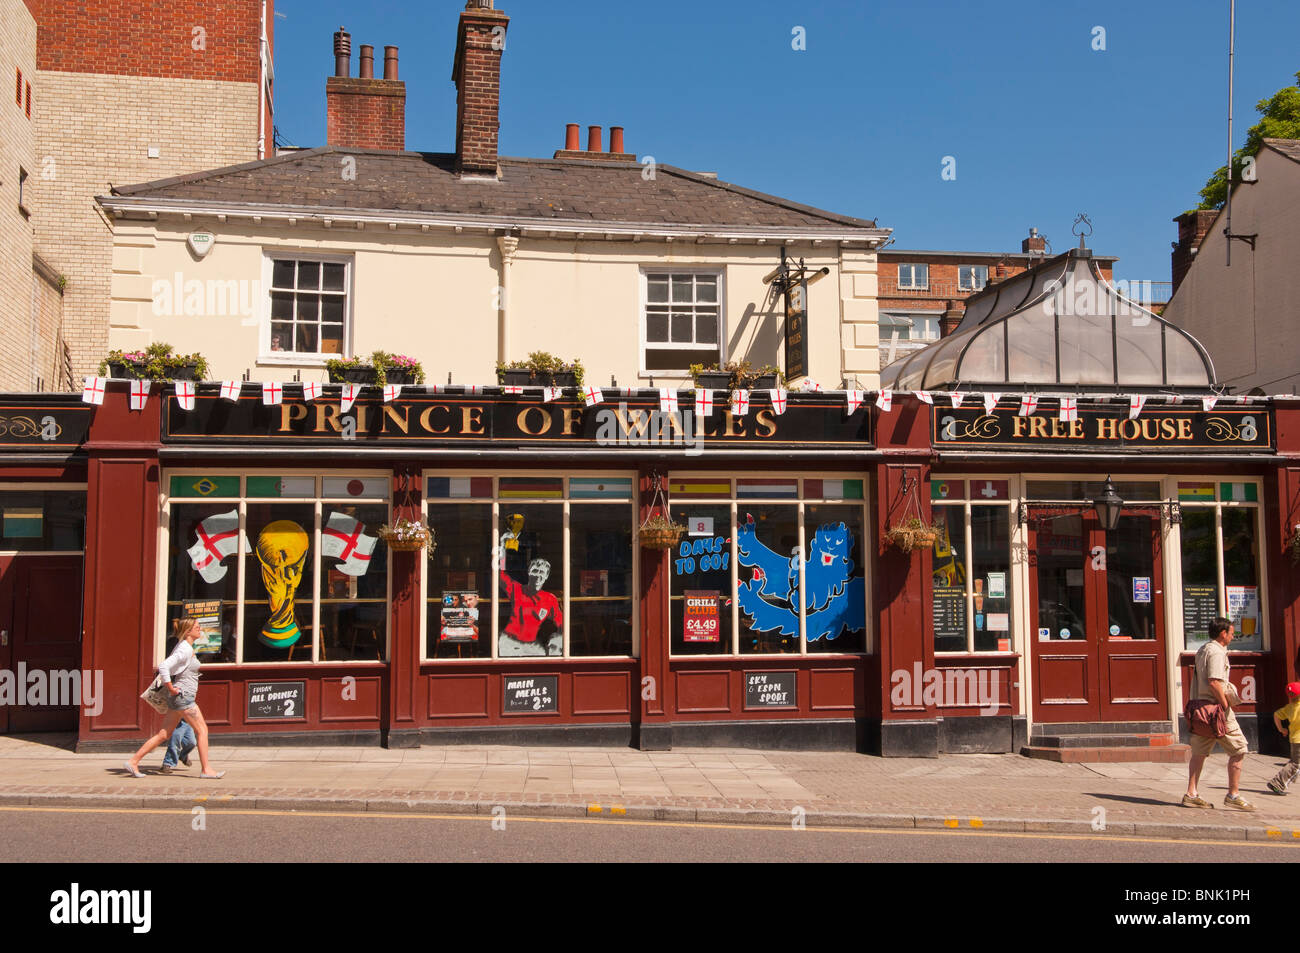 Der Prinz von Wales-frei Haus-Kneipe mit Fußball World Cup Dekorationen in Norwich, Norfolk, England, Großbritannien, Uk Stockfoto